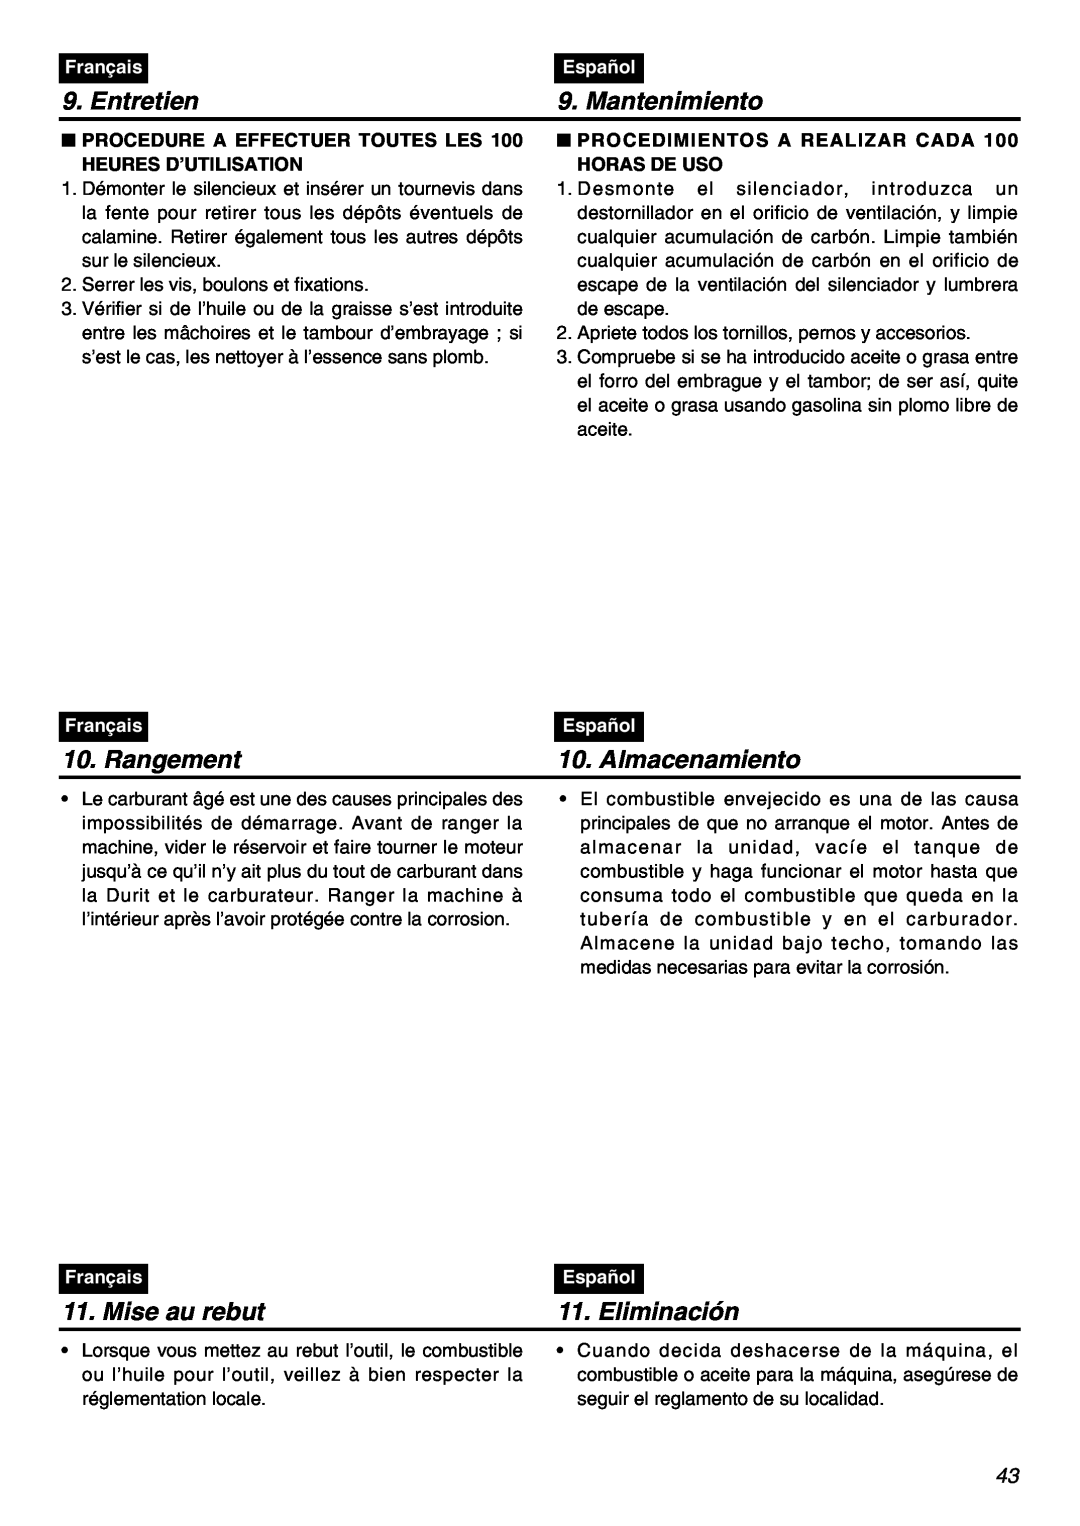 Zenoah BCZ3001S manual Entretien, Mantenimiento, Rangement, Almacenamiento, Mise au rebut, Eliminación, Français, Español 